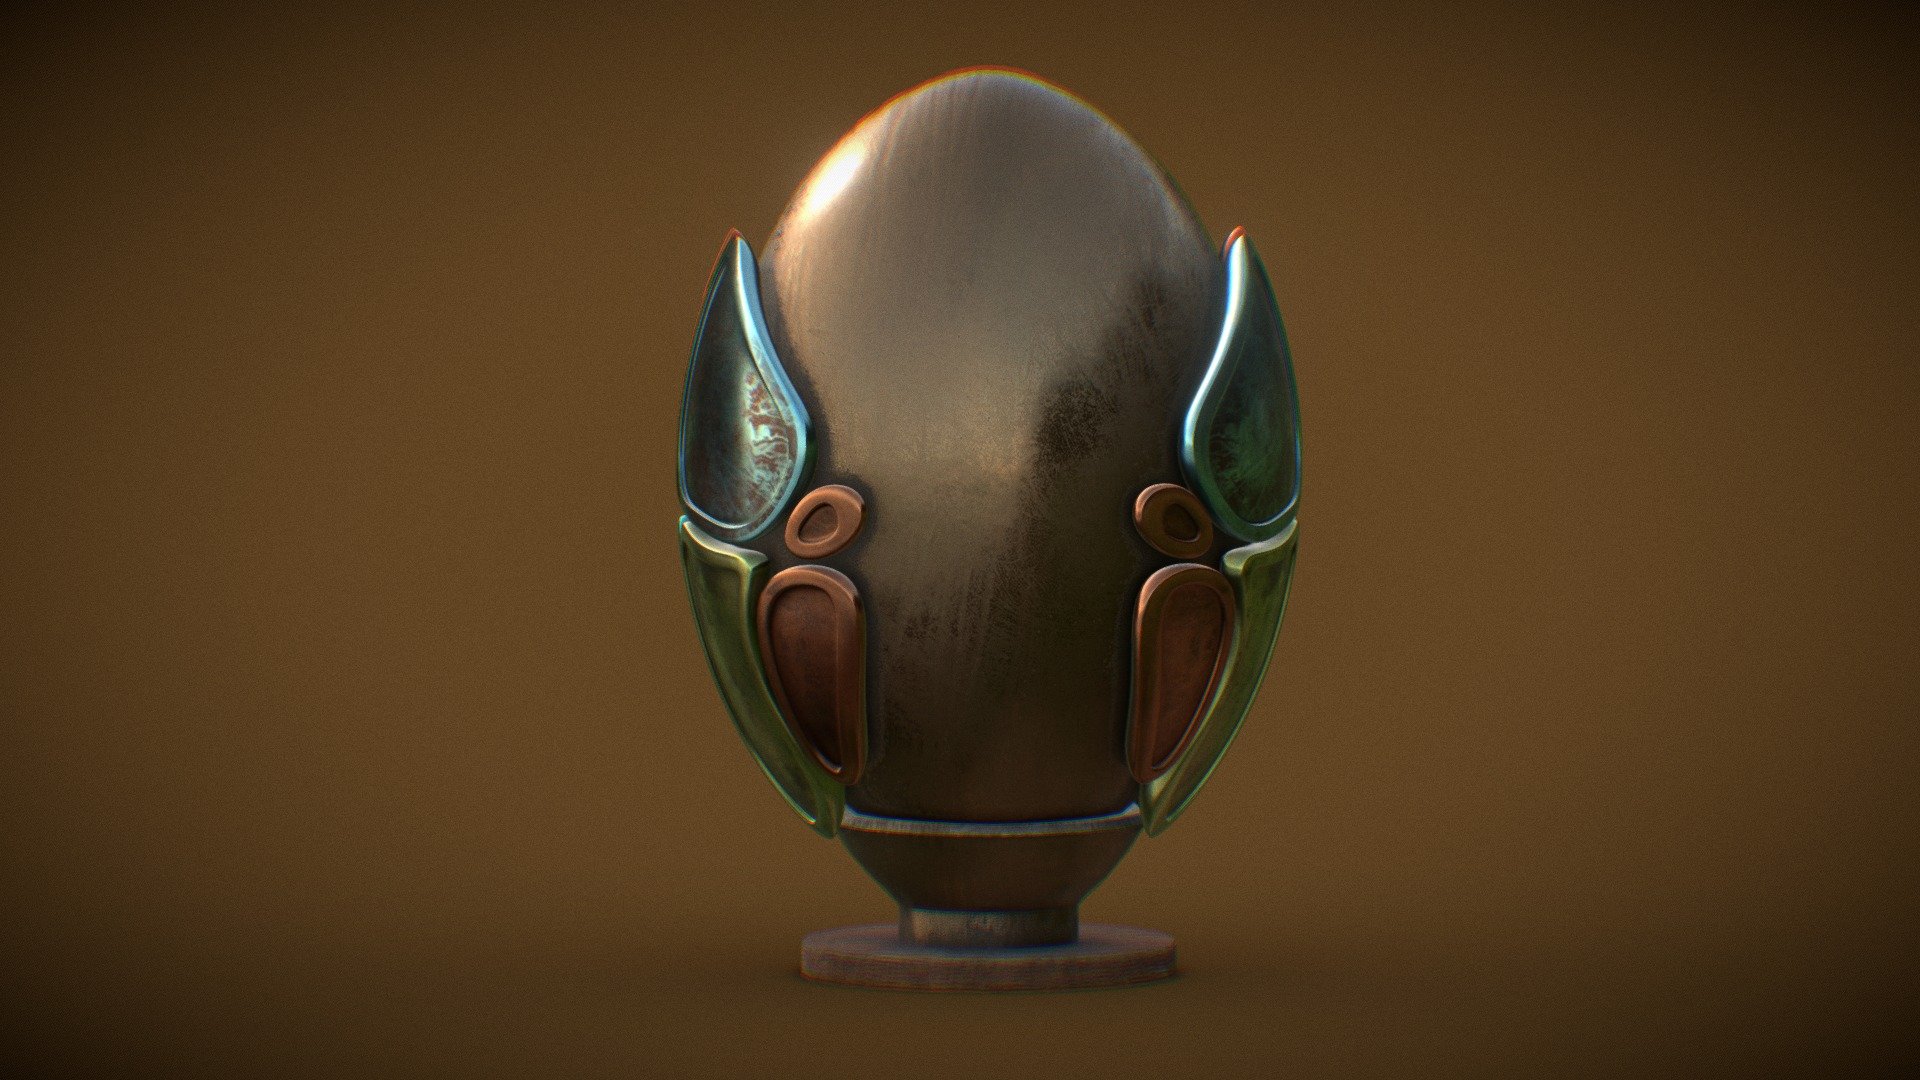 Old egg totem - Egg totem - 3D model by 3DWorkbench 3d model